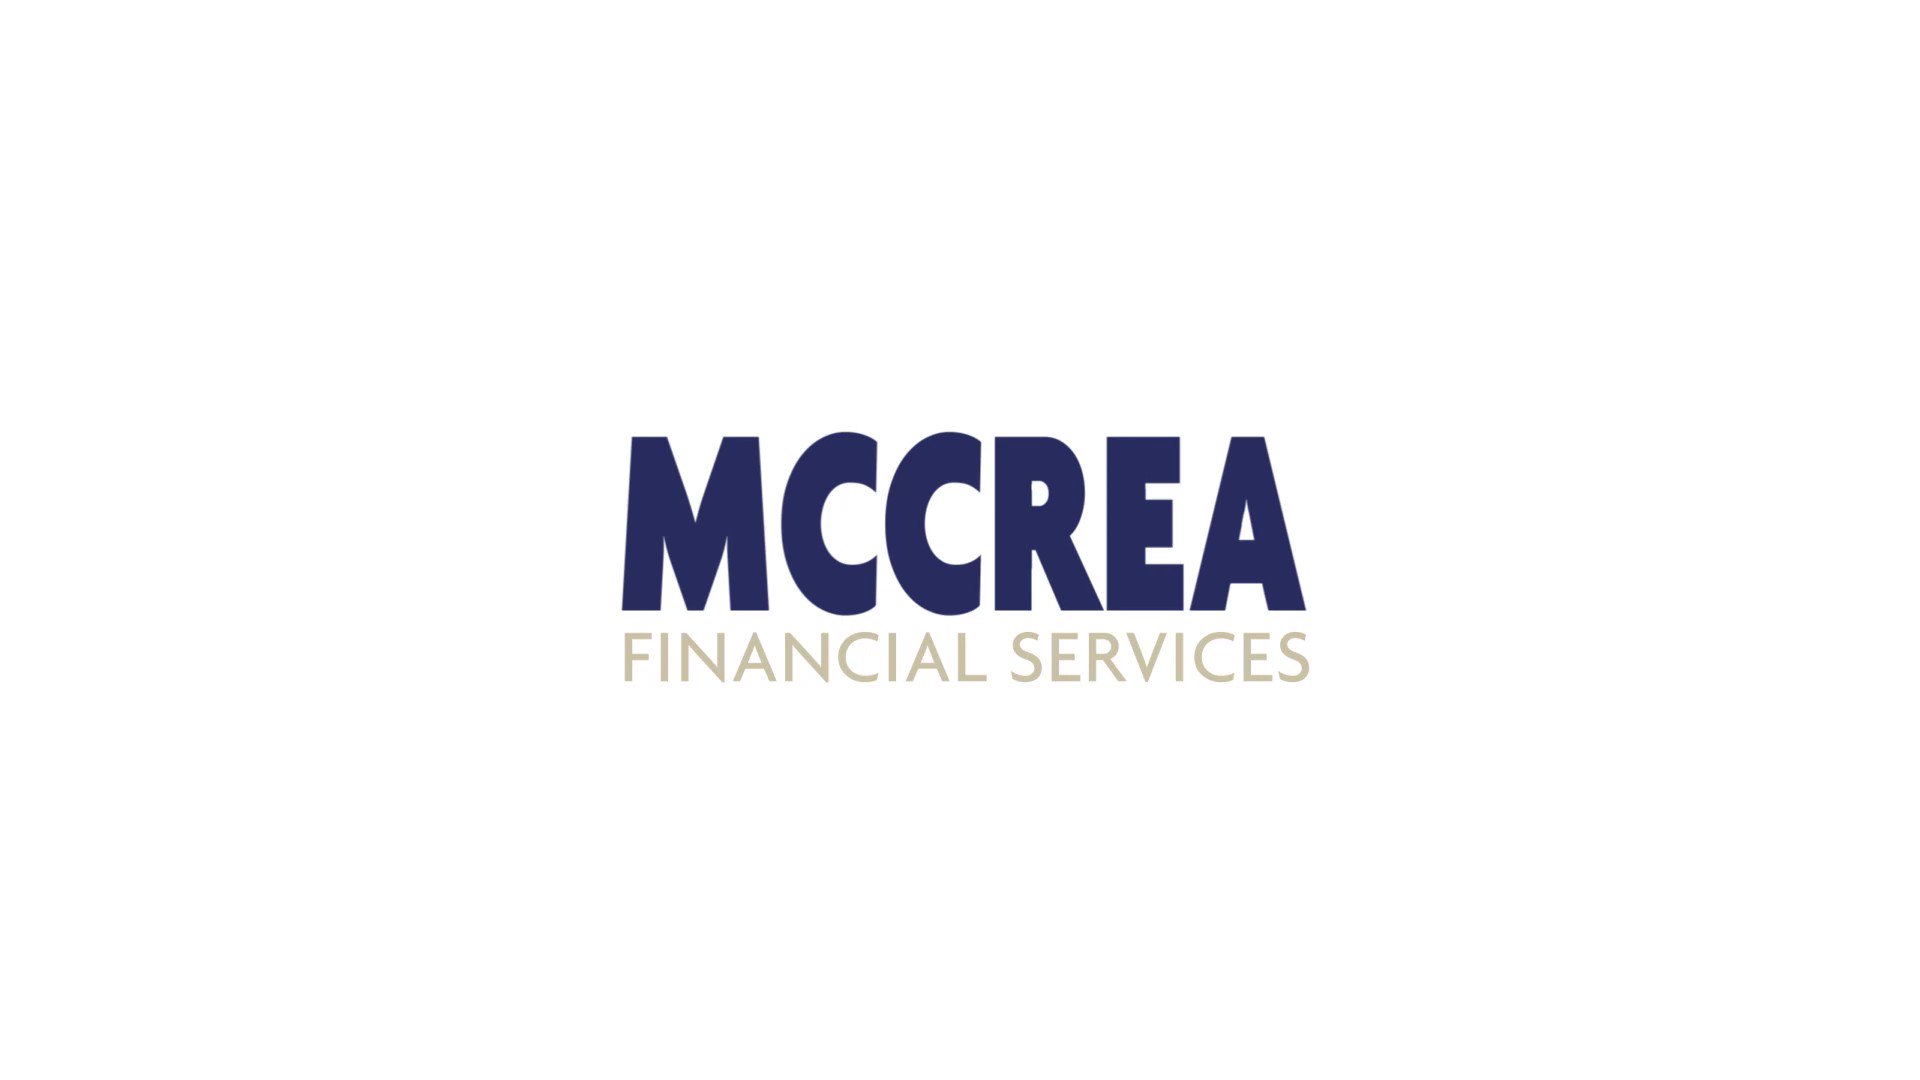 Mccrea Financial Services